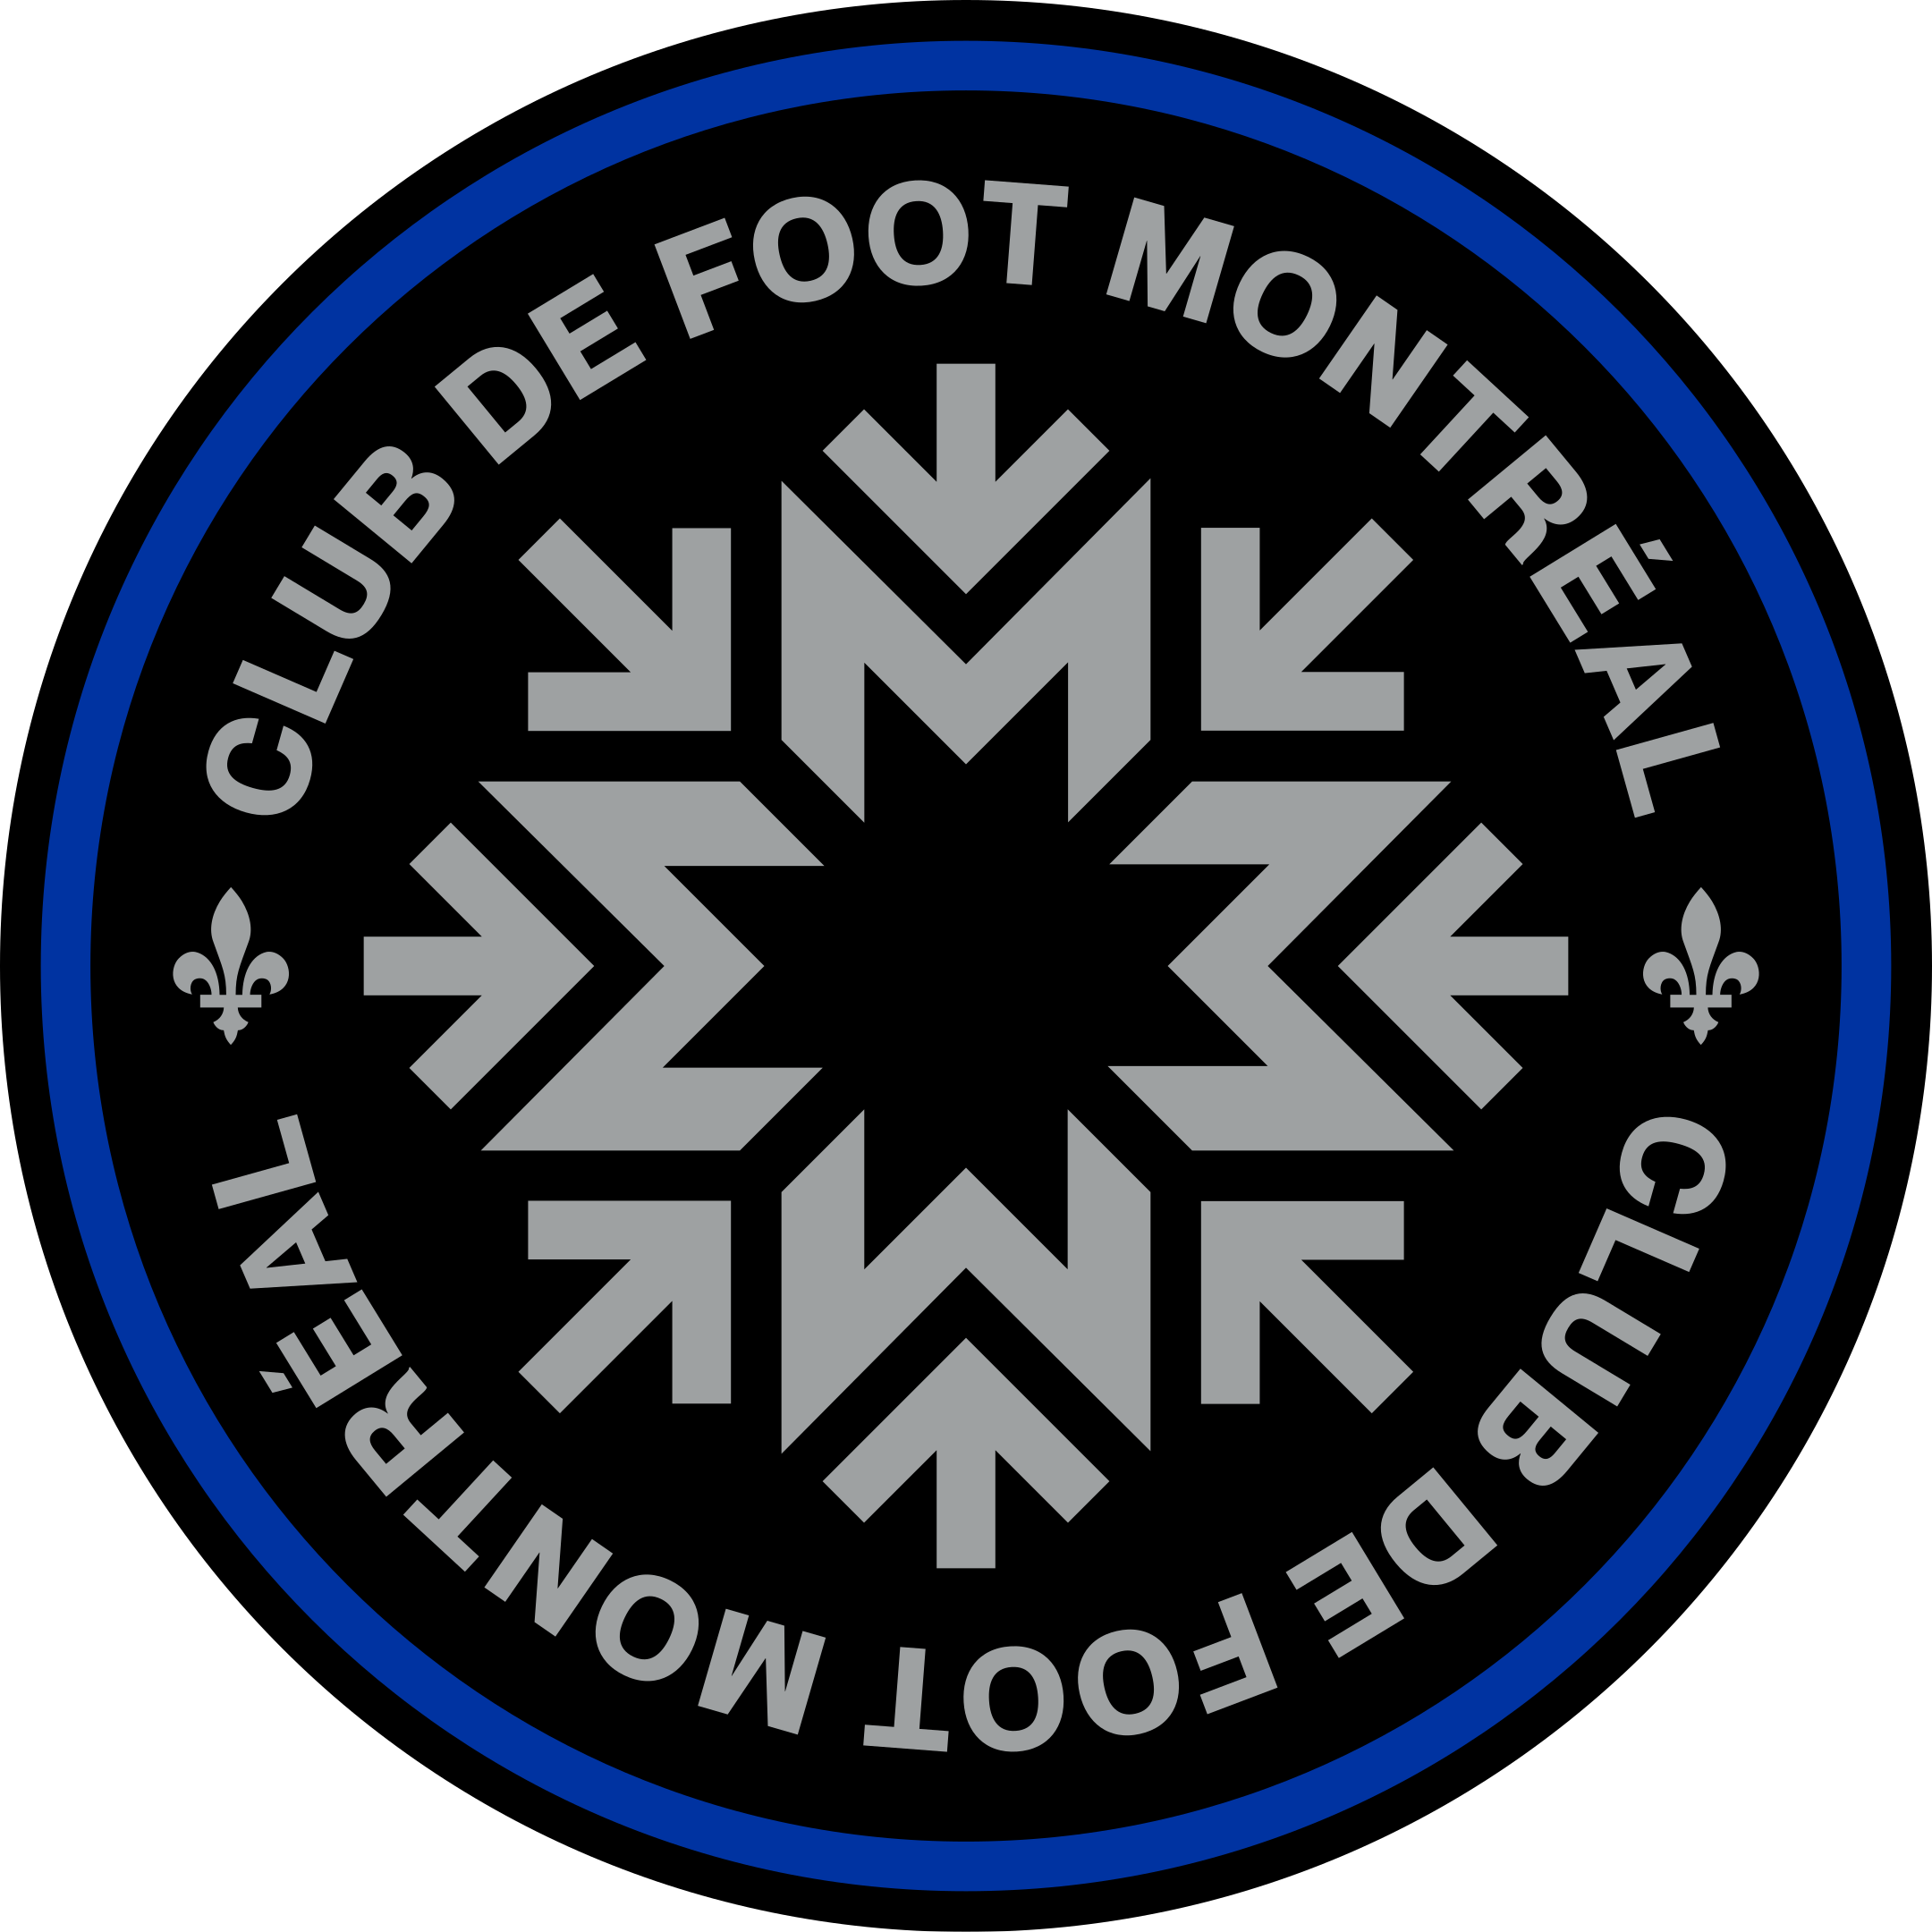 cf montreal logo 1 - CF Montréal Logo